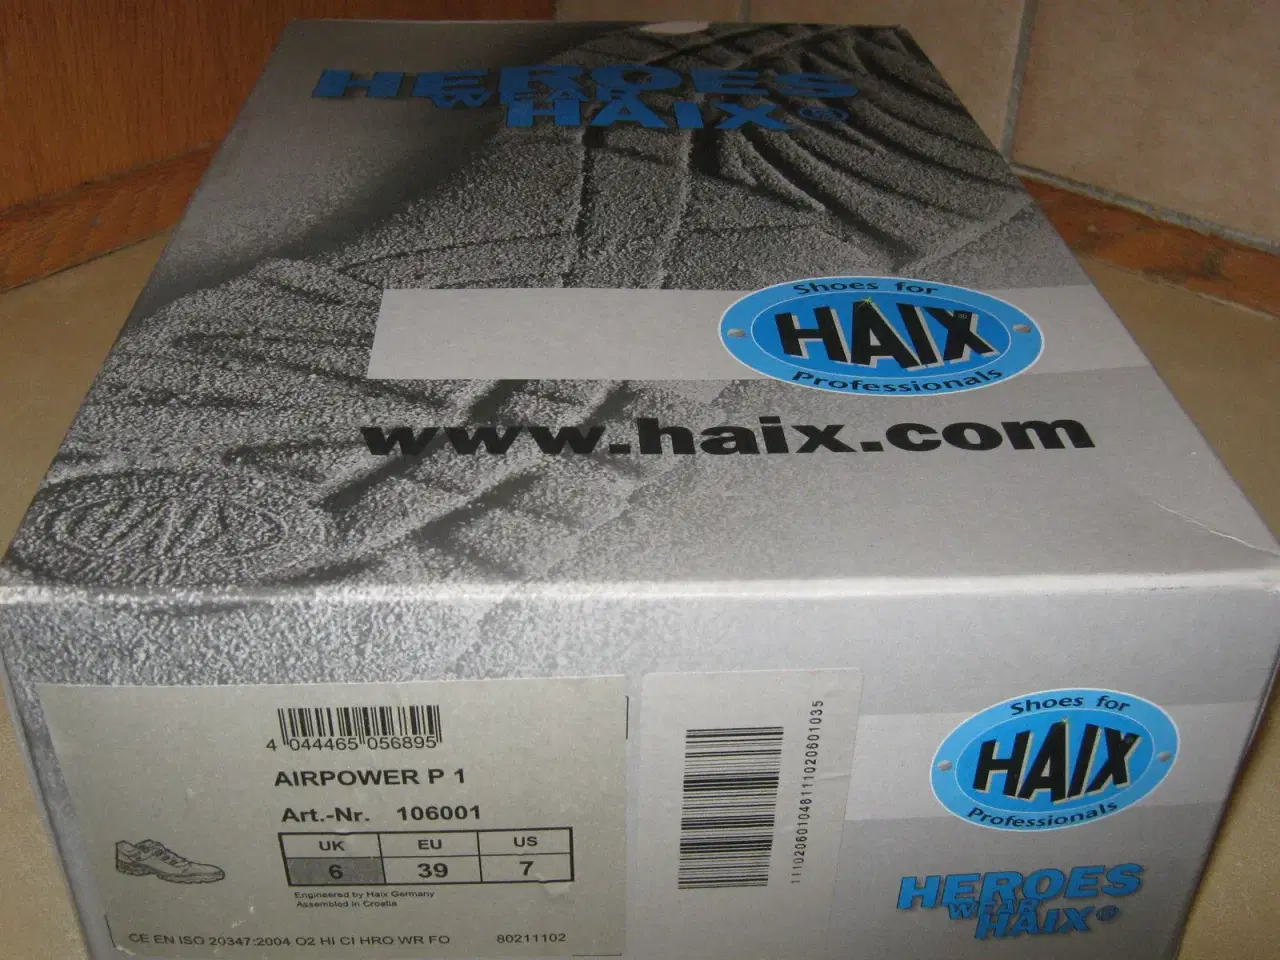 Billede 3 - Trekking sko - Haix Airpower P1